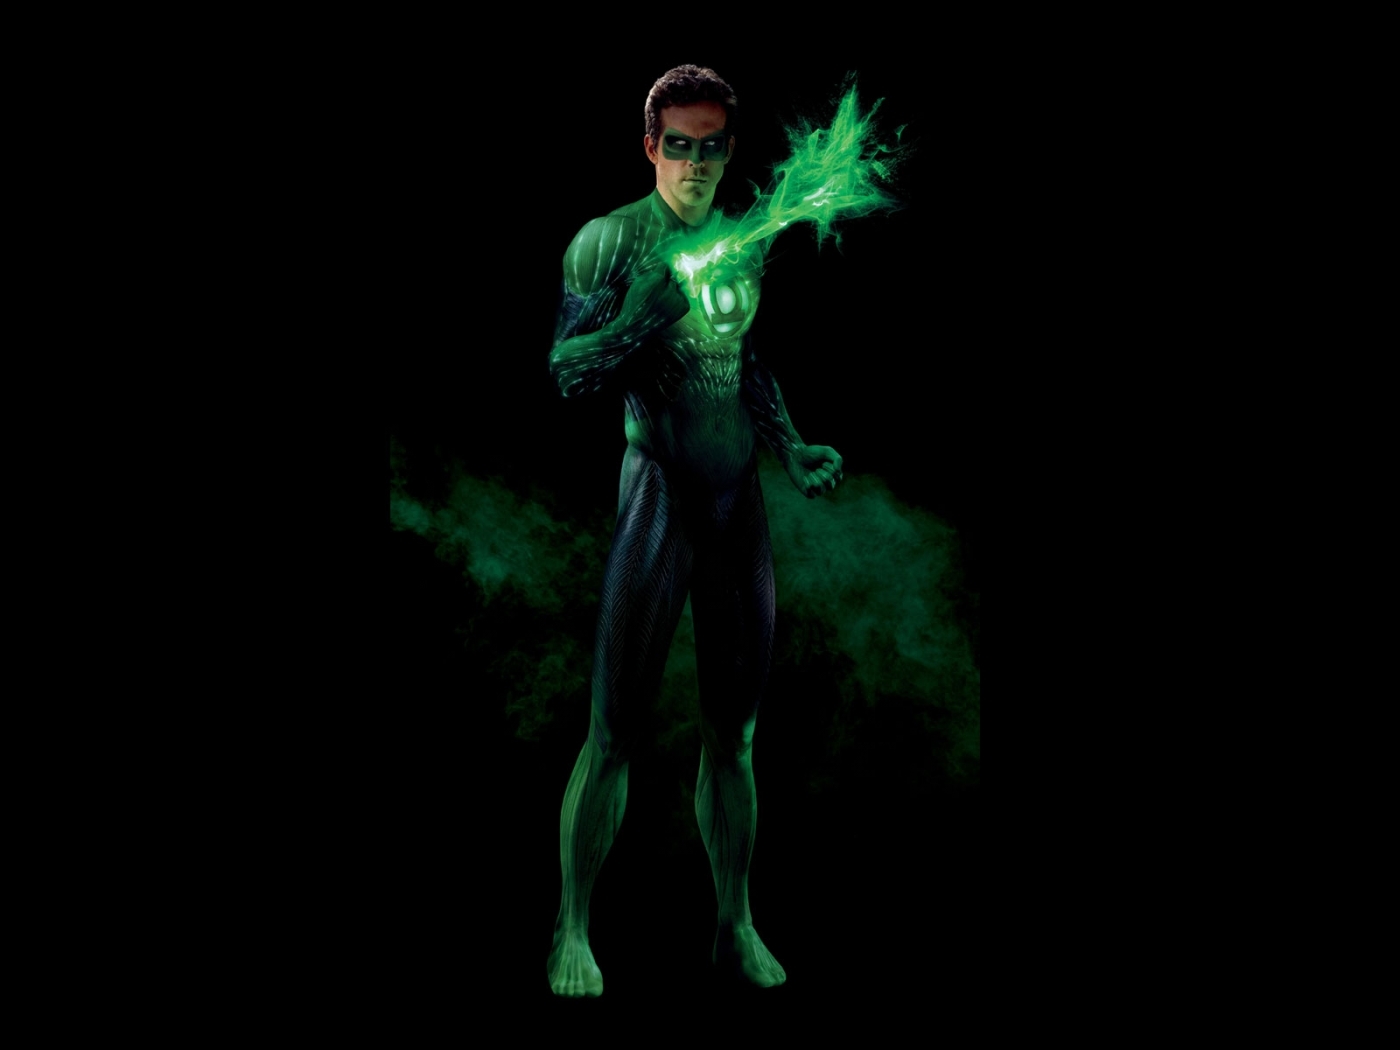 Free download wallpaper Green Lantern, People, Men, Cinema on your PC desktop